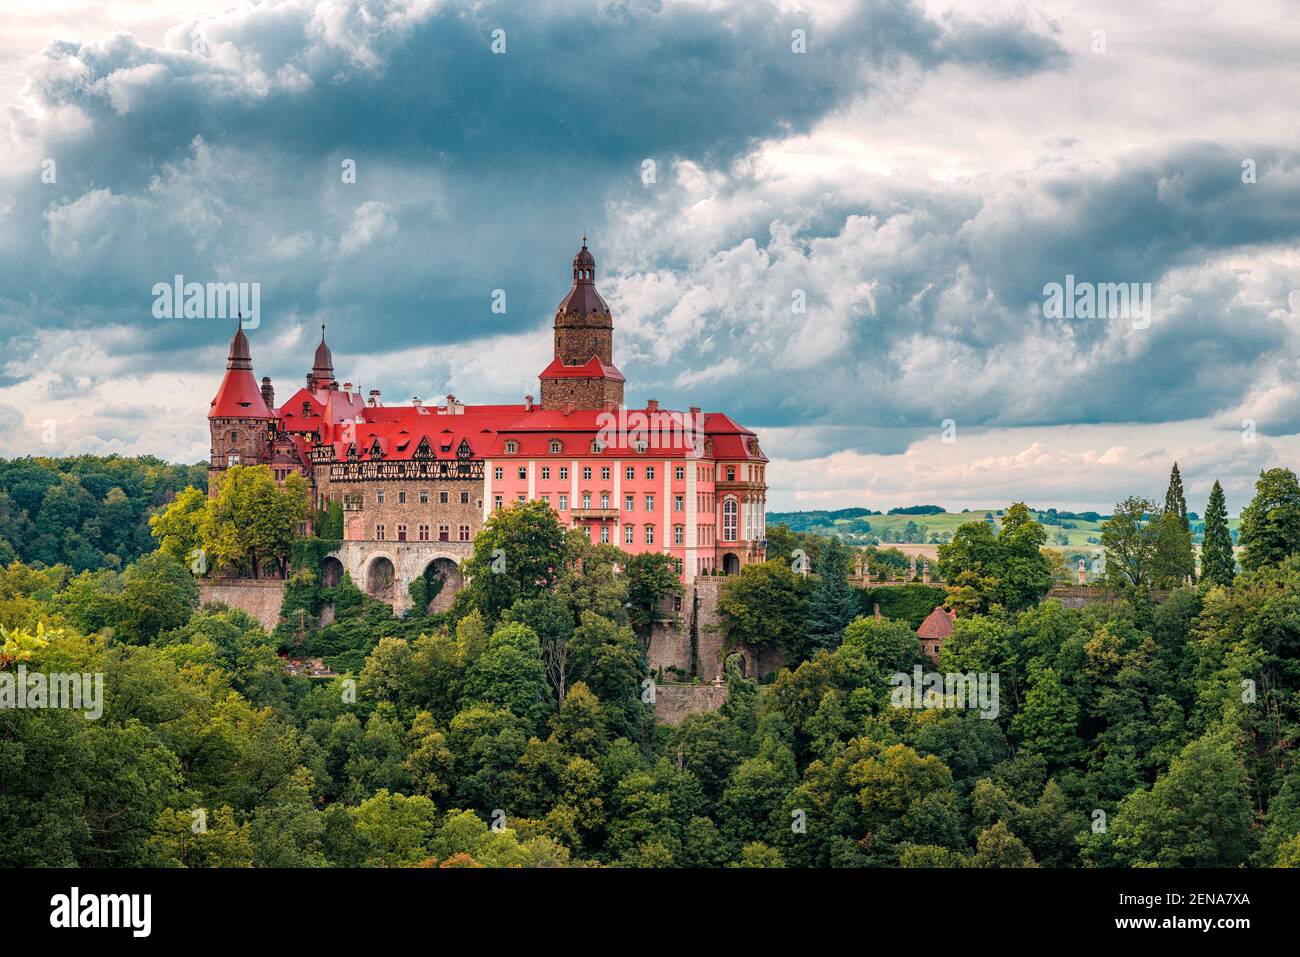 Książ Castle in Wałbrzych Stock Photo